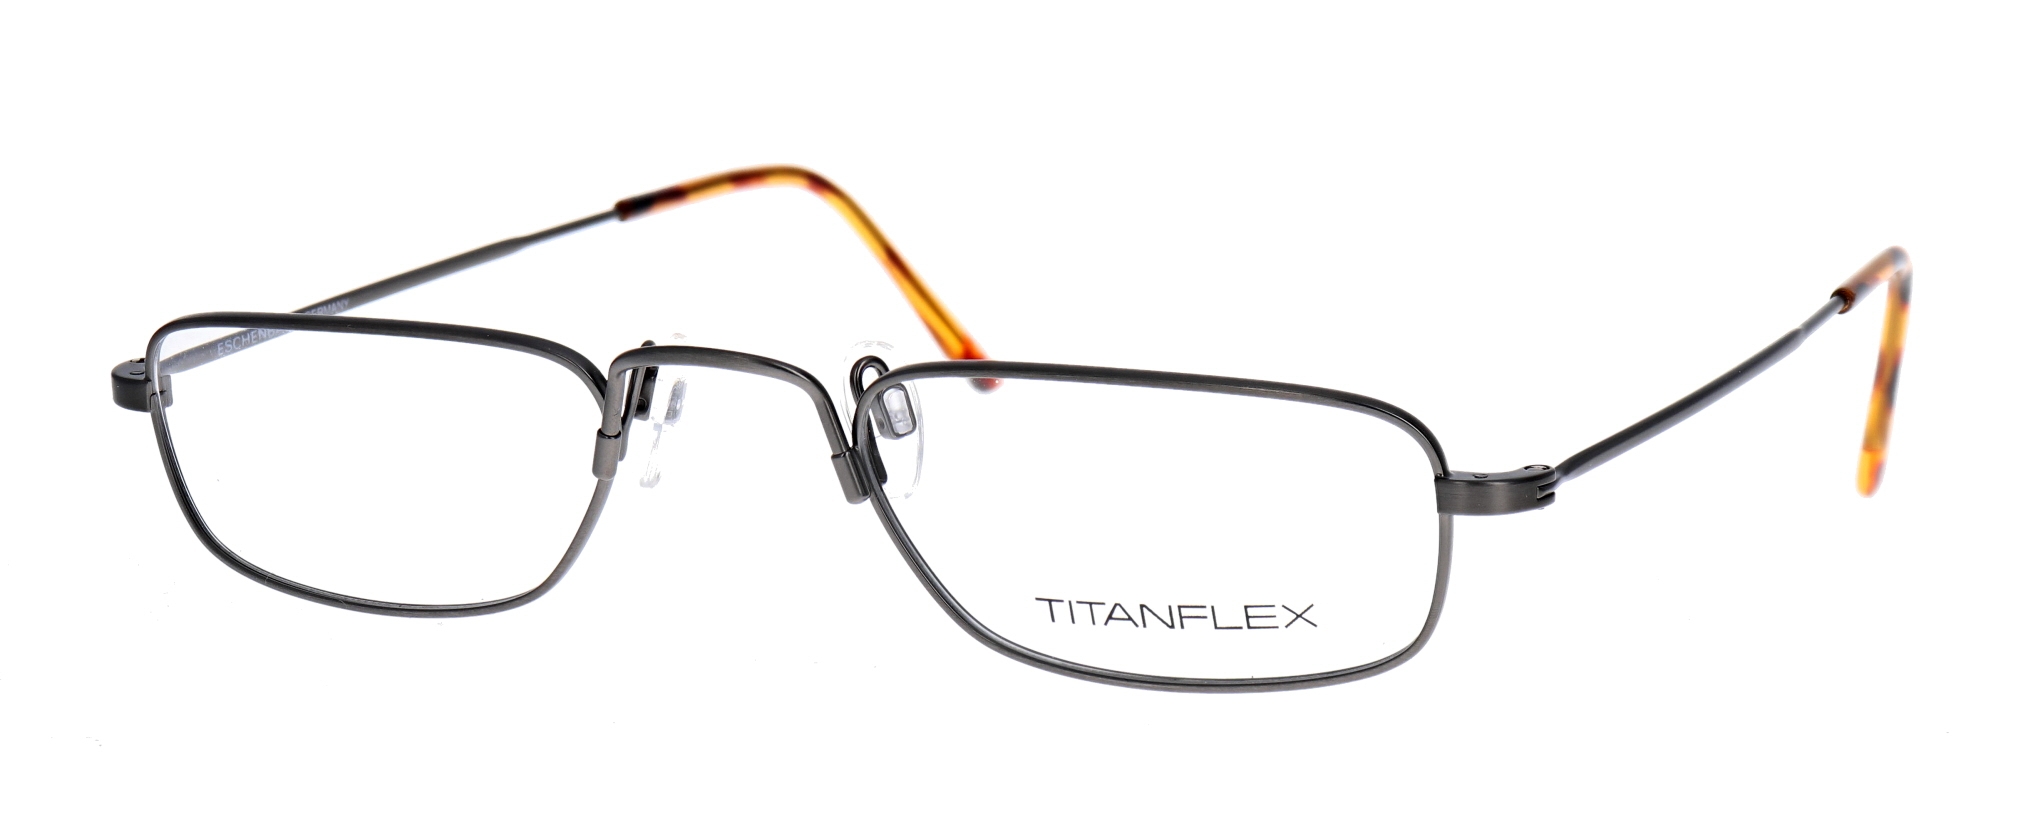 Titanflex lookover 3761